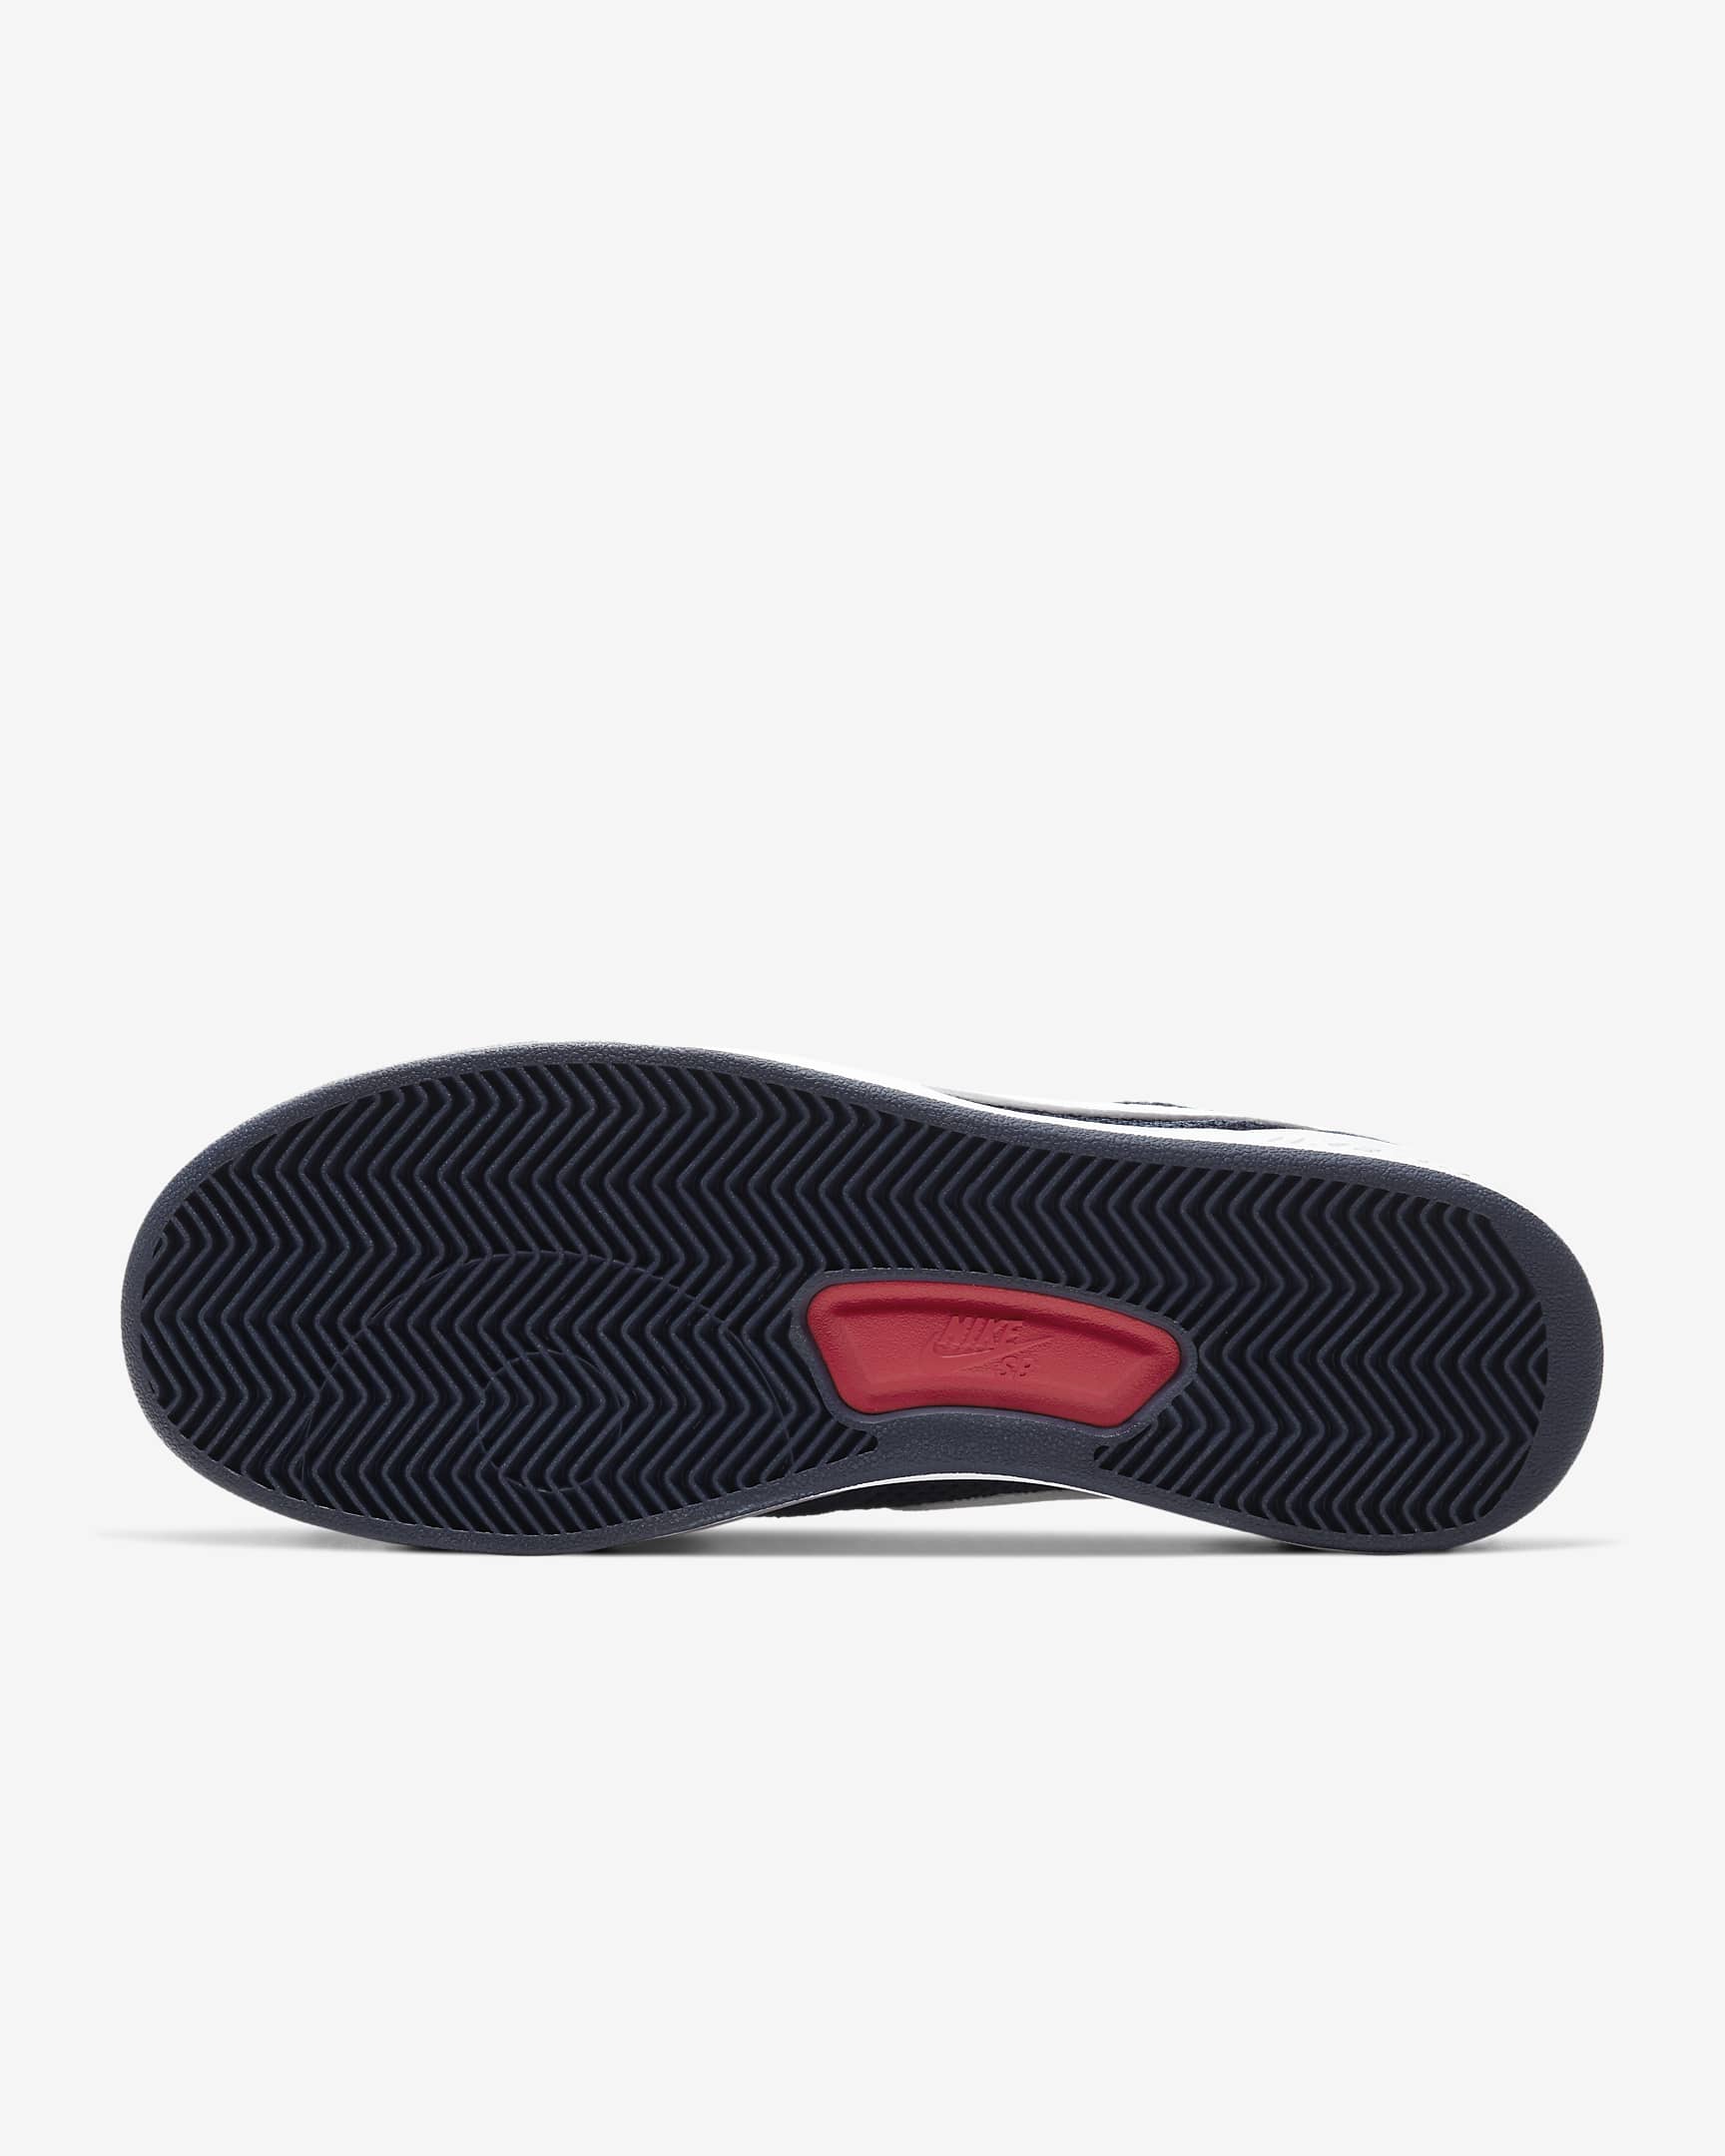 Nike SB Adversary Zapatillas de skateboard - Midnight Navy/Midnight Navy/University Red/Blanco